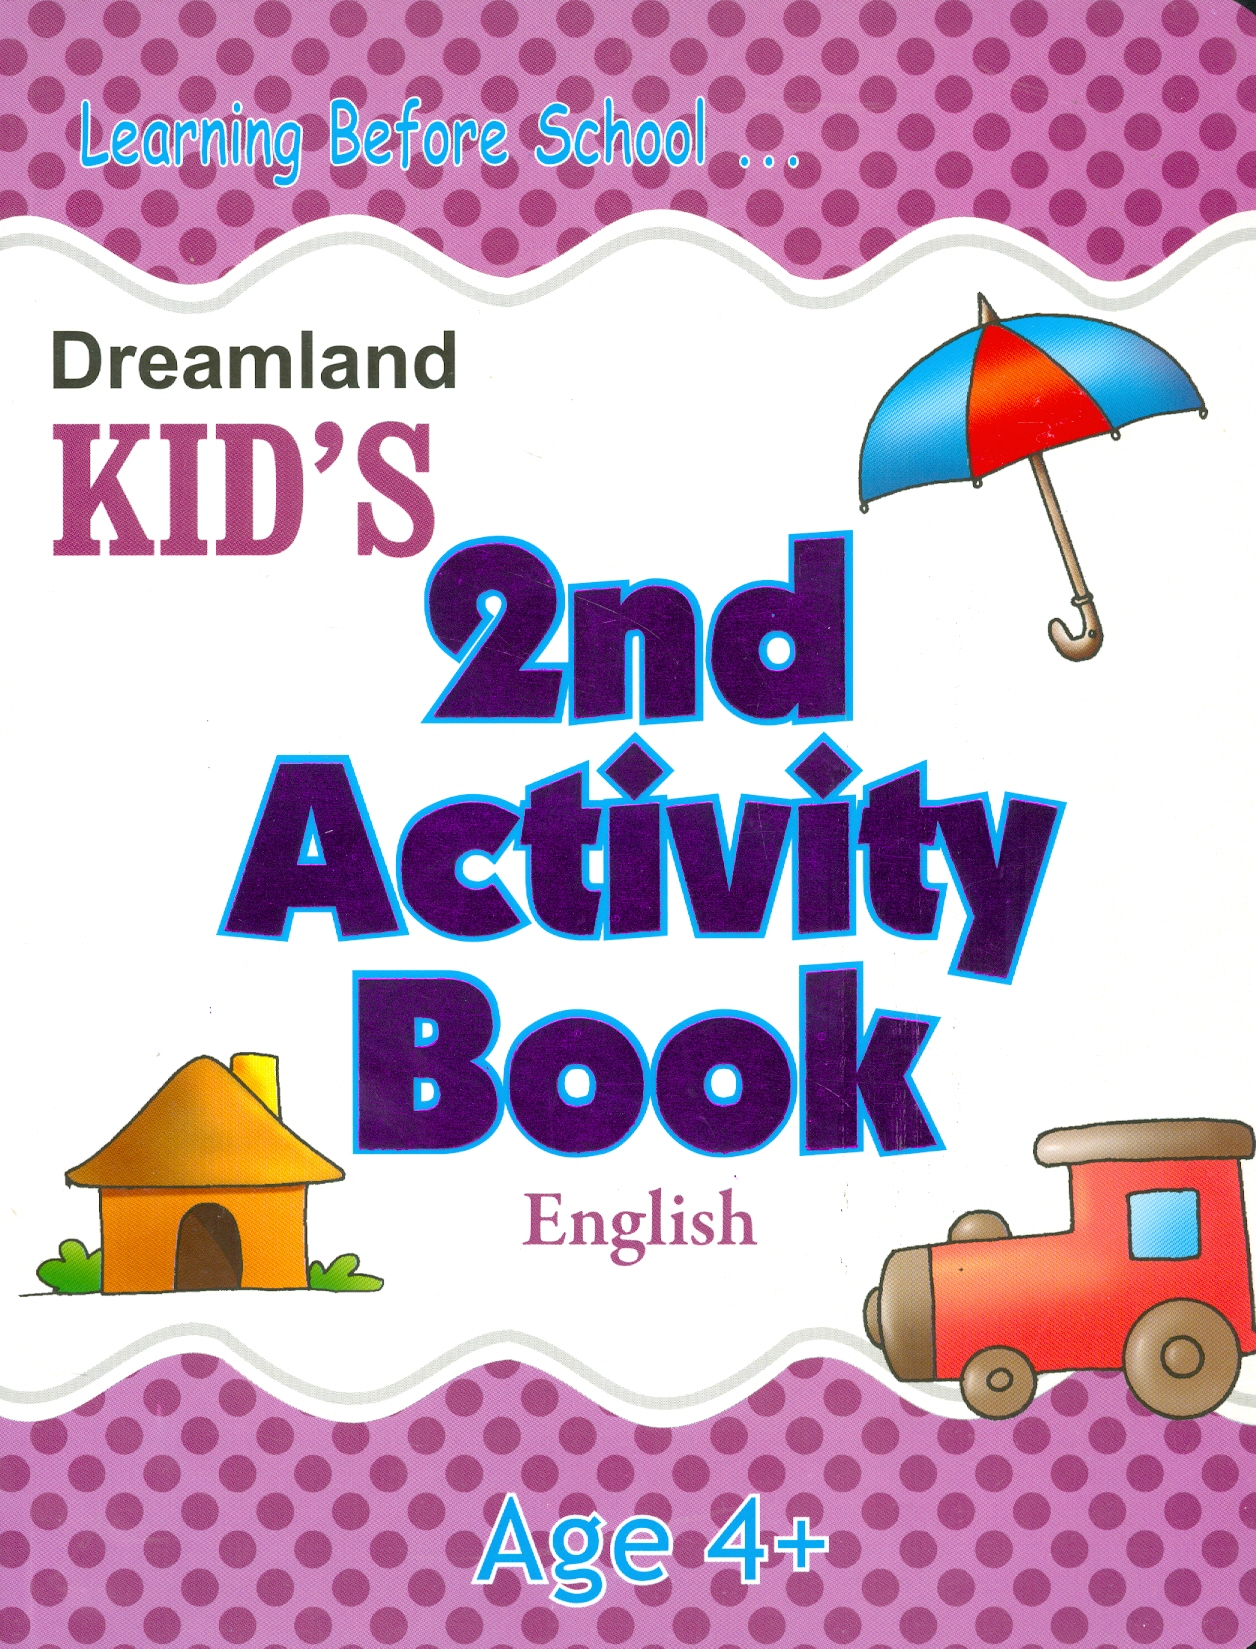 Kid's 2 nd Activity Book English - Age 4+ (Các Hoạt Động Học Tập Tiếng Anh Cho Trẻ 4+)